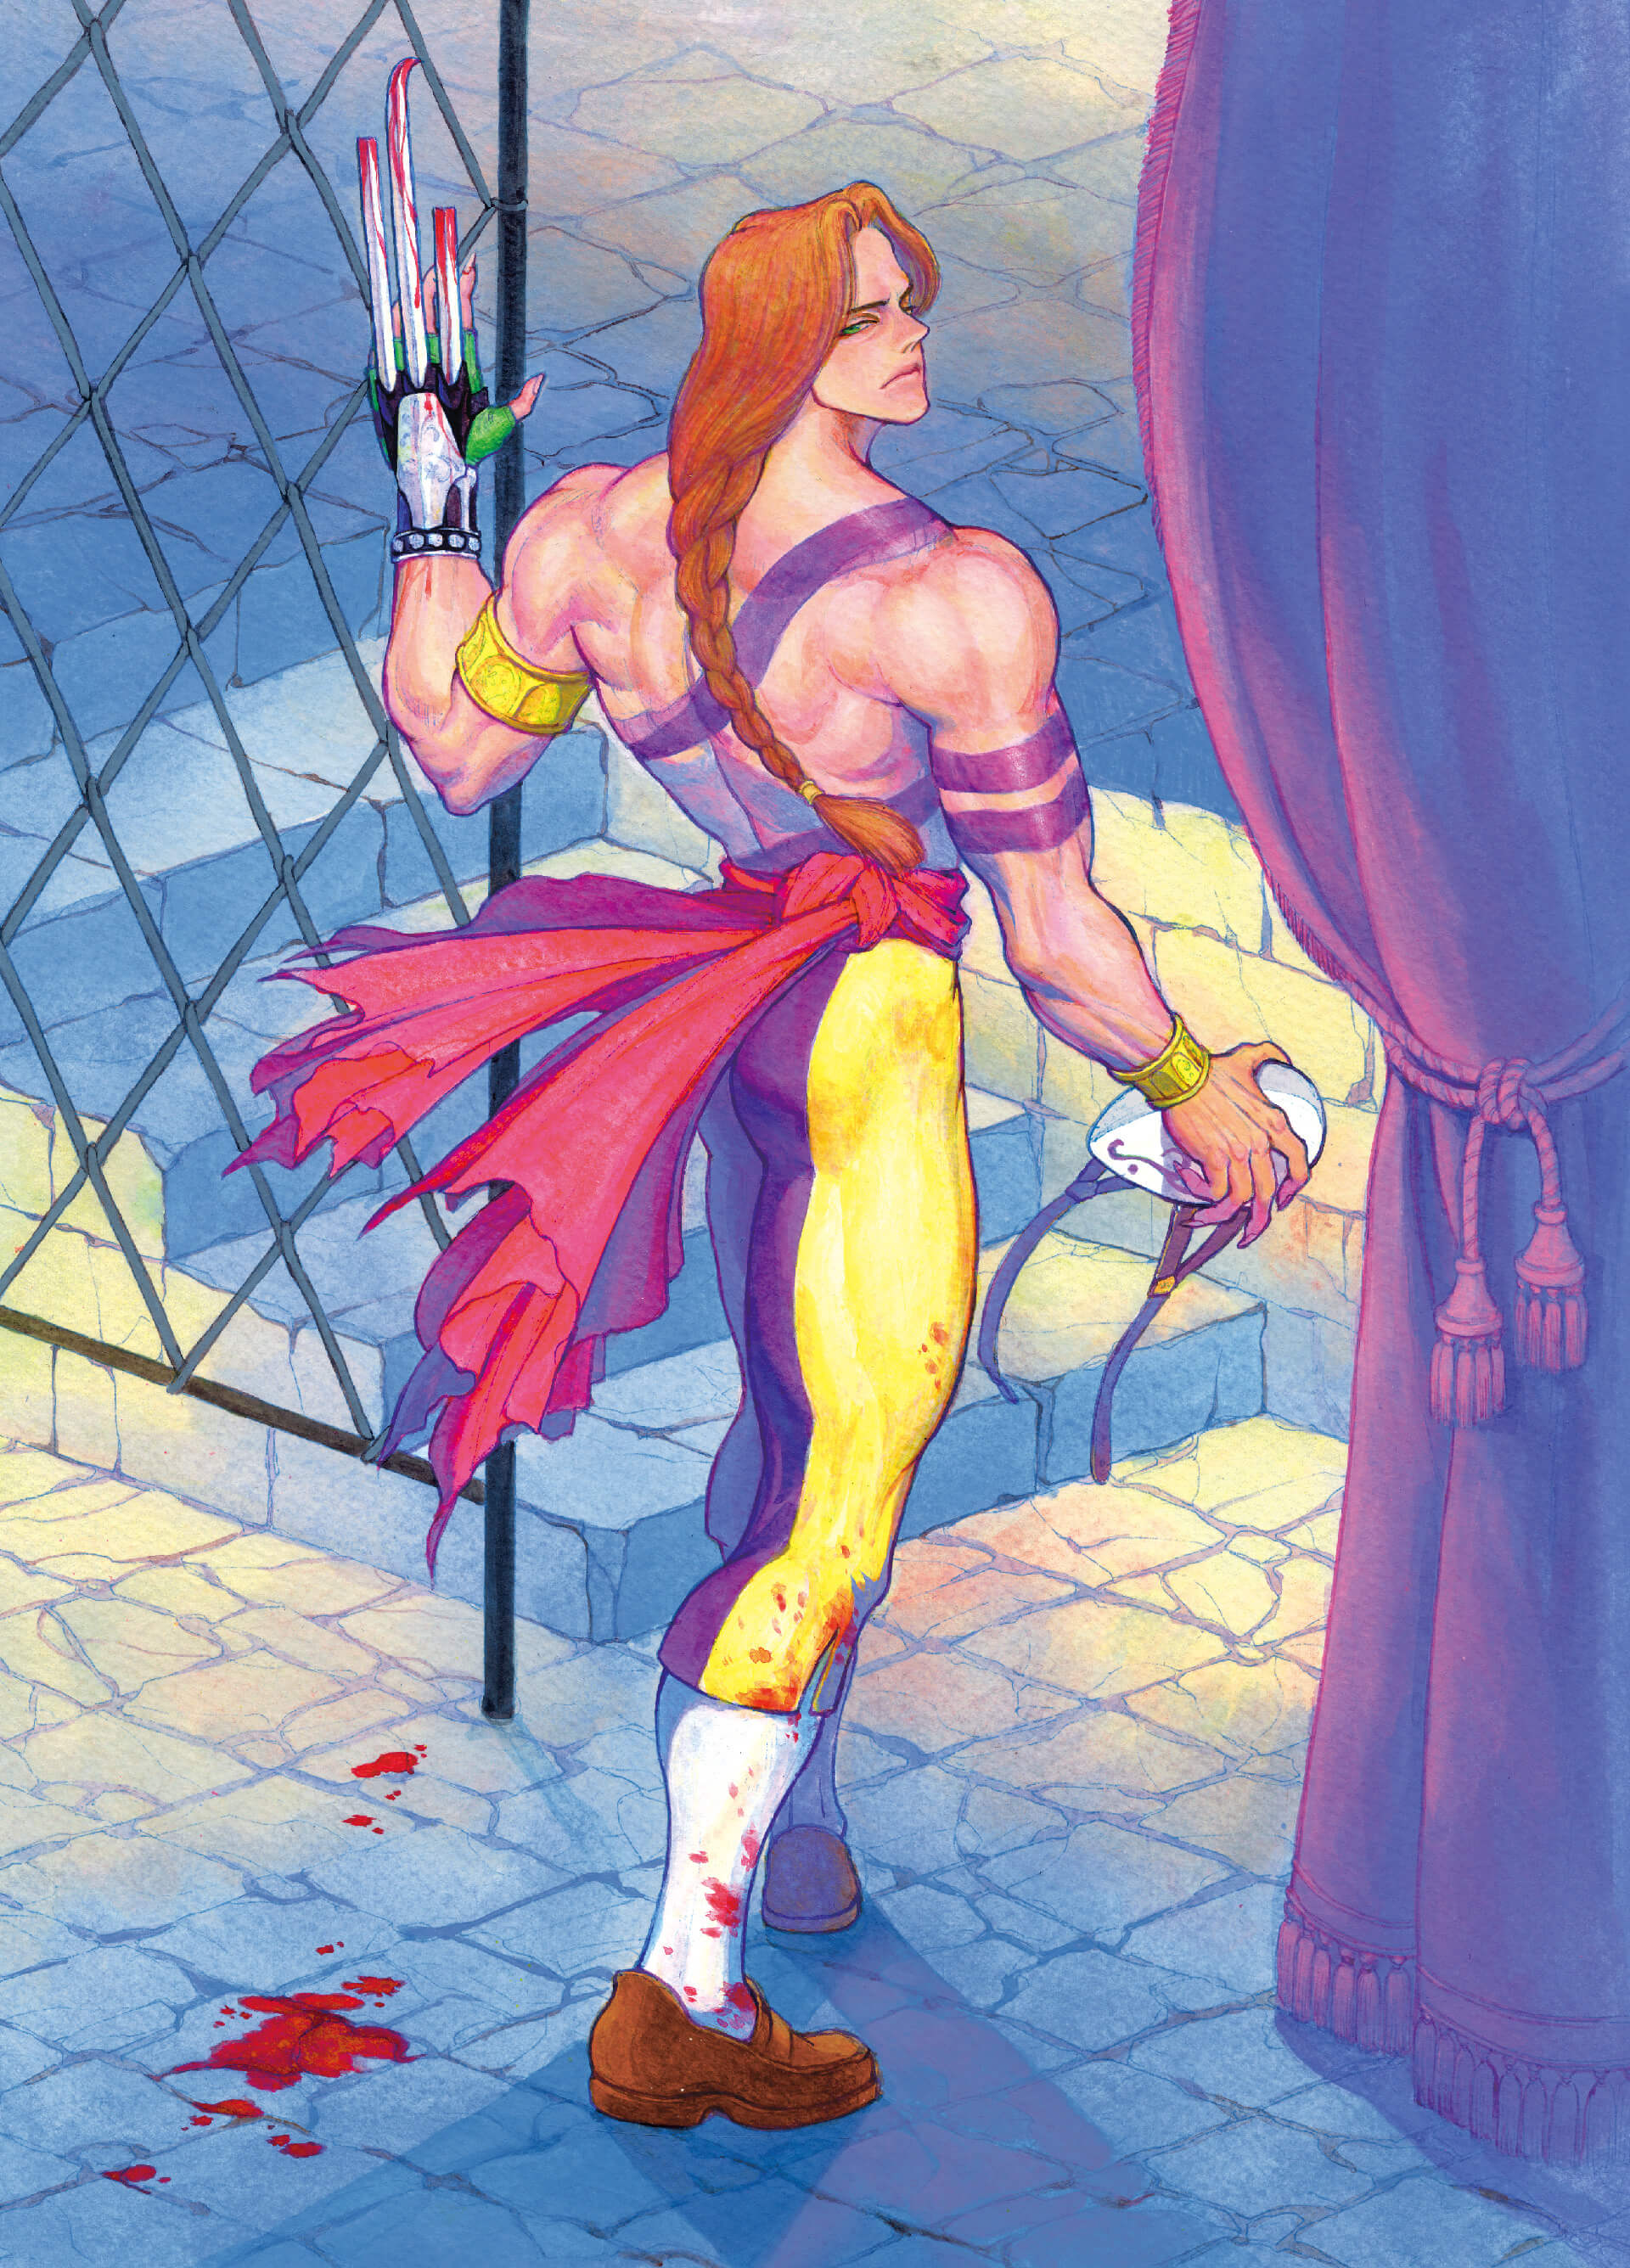 Blanka Arte conceitual do personagem, Images, Street Fighter II, Museu